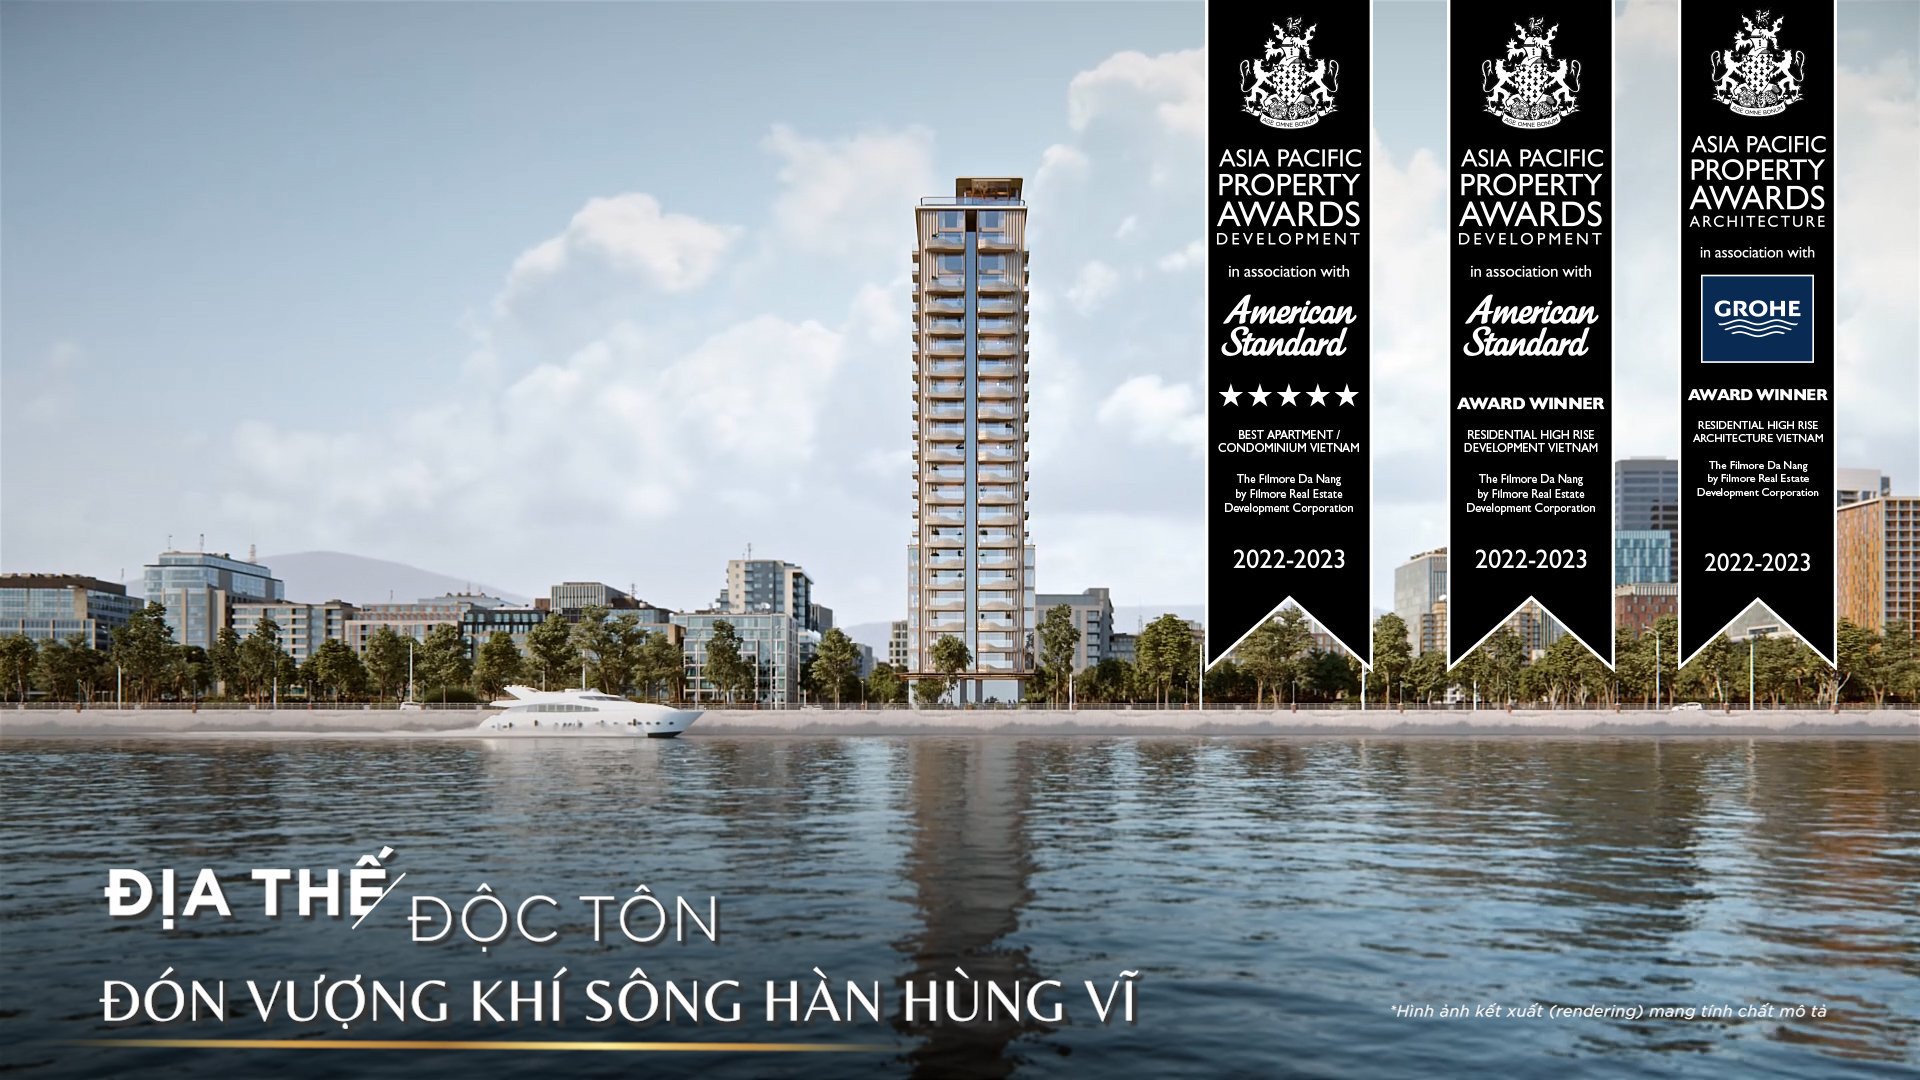 Bán Căn Hộ 3 Phòng Ngủ đẹp nhất dự án The Filmore Đà Nẵng, trực diện sông Hàn. Giá siêu rẻ chỉ 20,5 tỷ. LH 0903407925 Hương 7